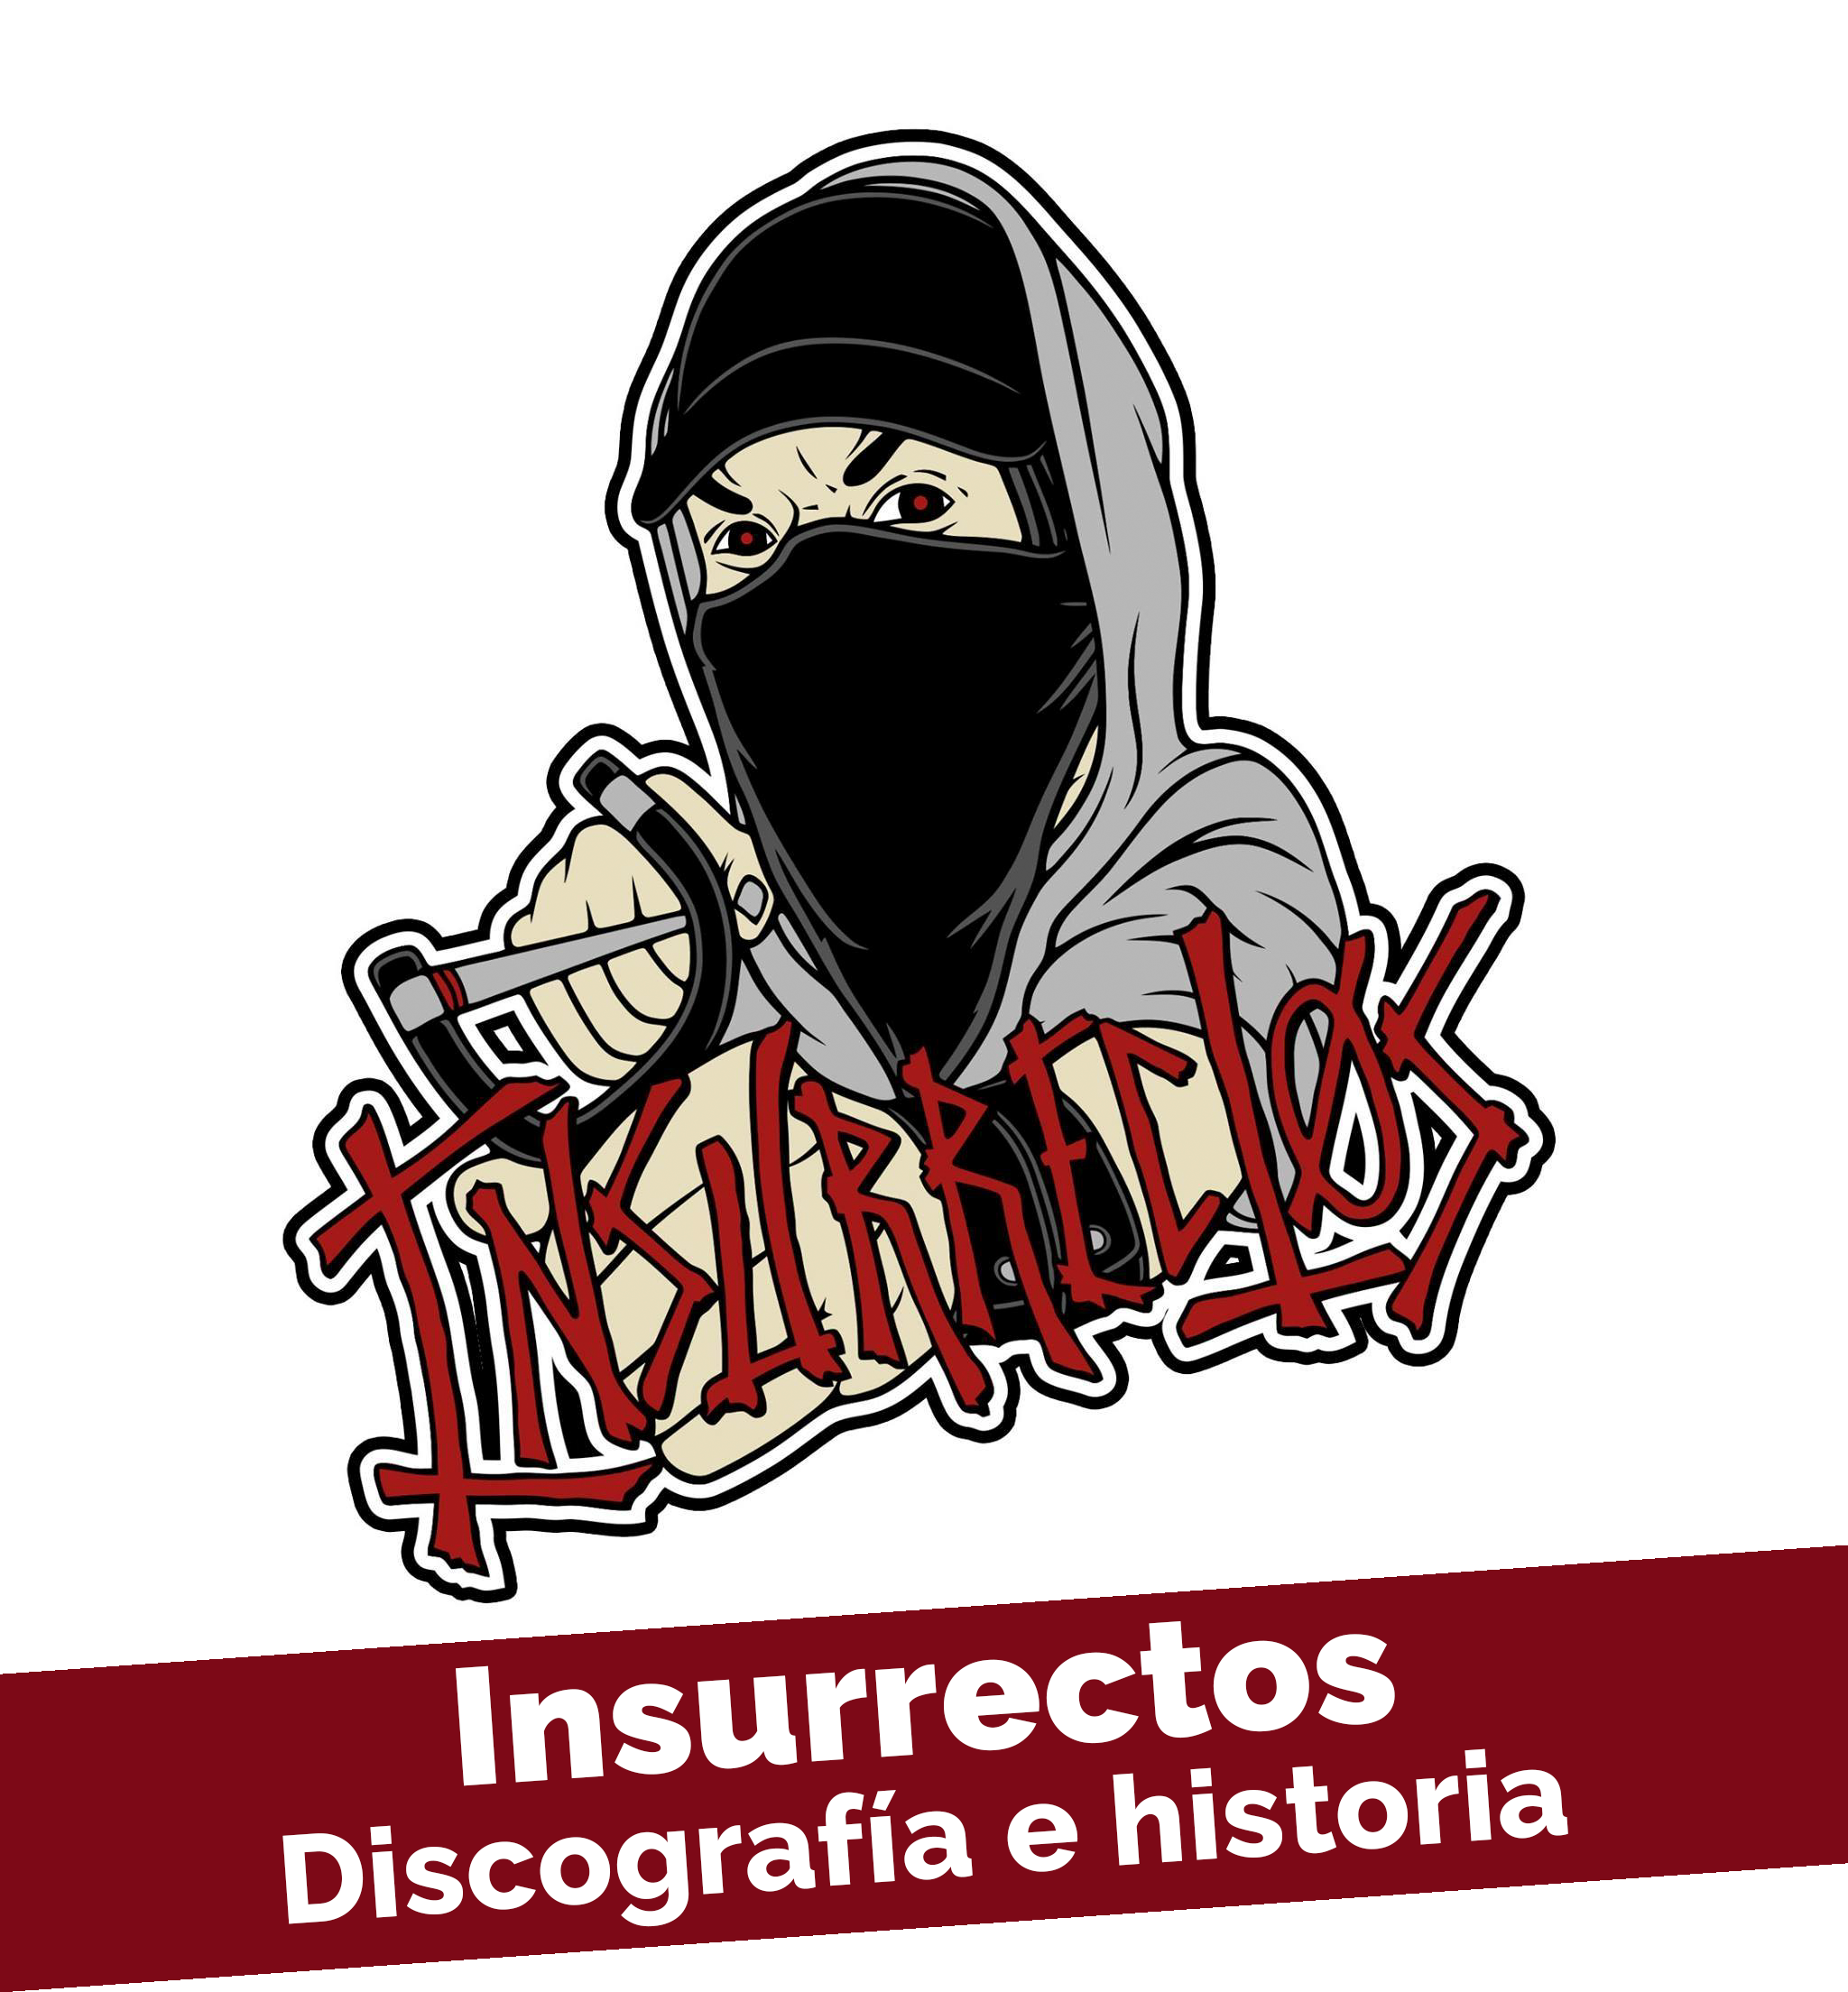 Logo del grupo musical insurrectos